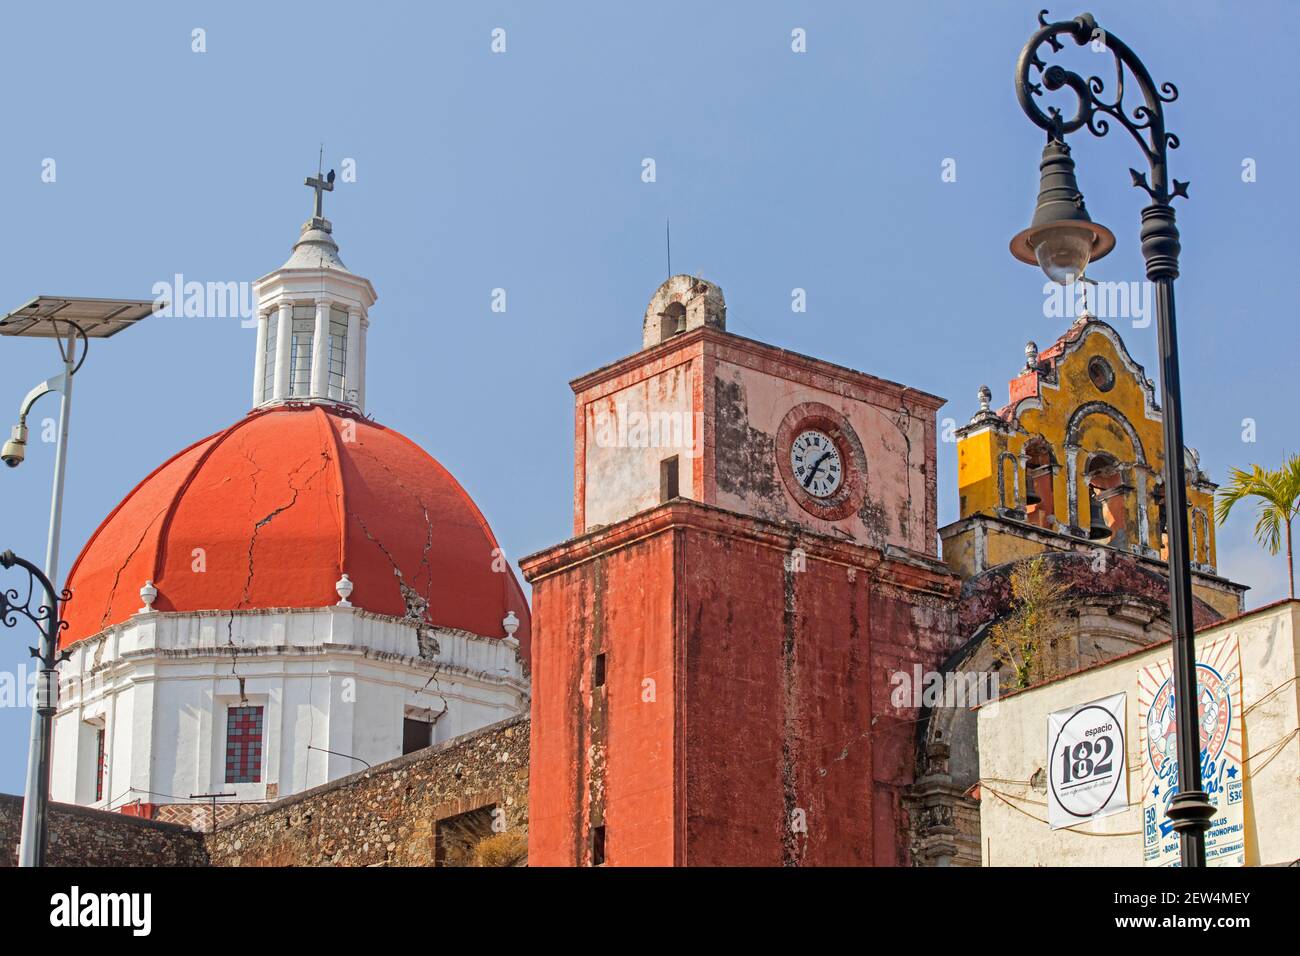 Cathédrale de Cuernavaca / Catedral de la Asunción de Maria, XVIe siècle église catholique romaine et monastère dans la ville de Cuernavaca, Morelos, Mexique Banque D'Images